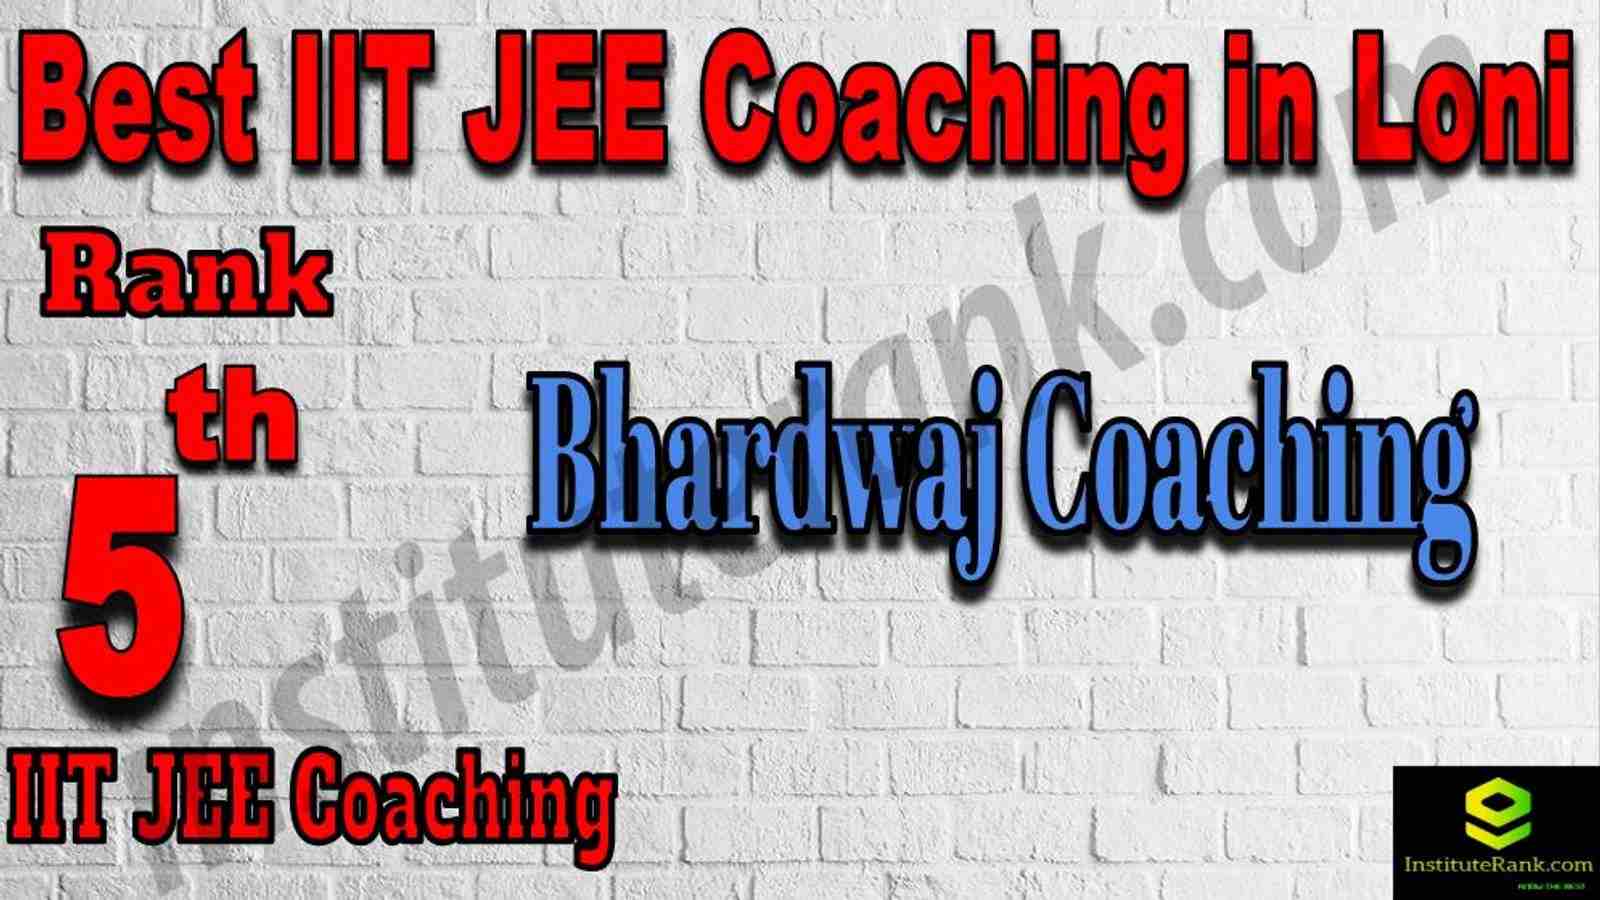 5th Best IIT JEE Coaching in Loni